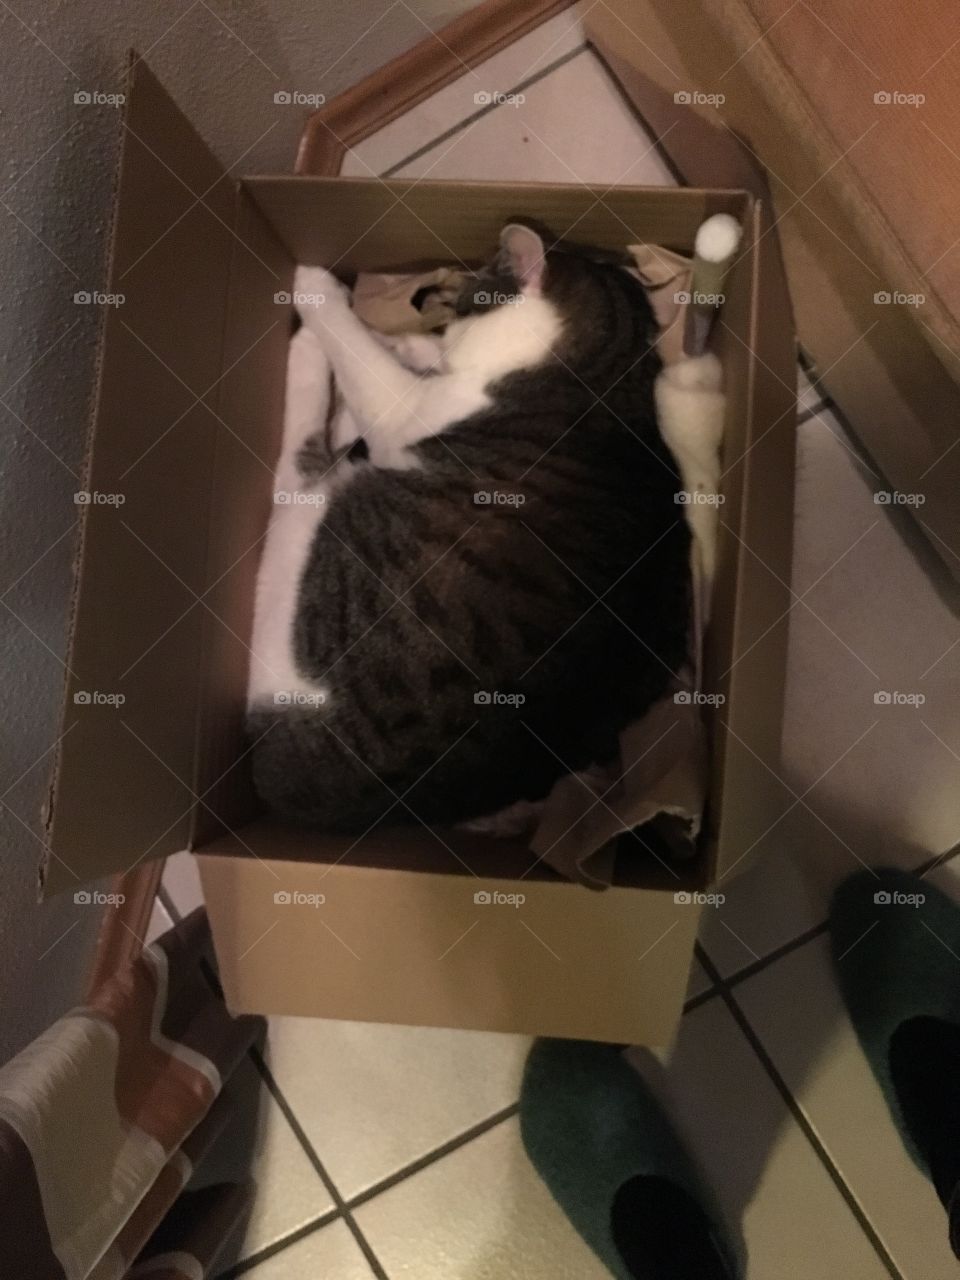 Cat in a box 